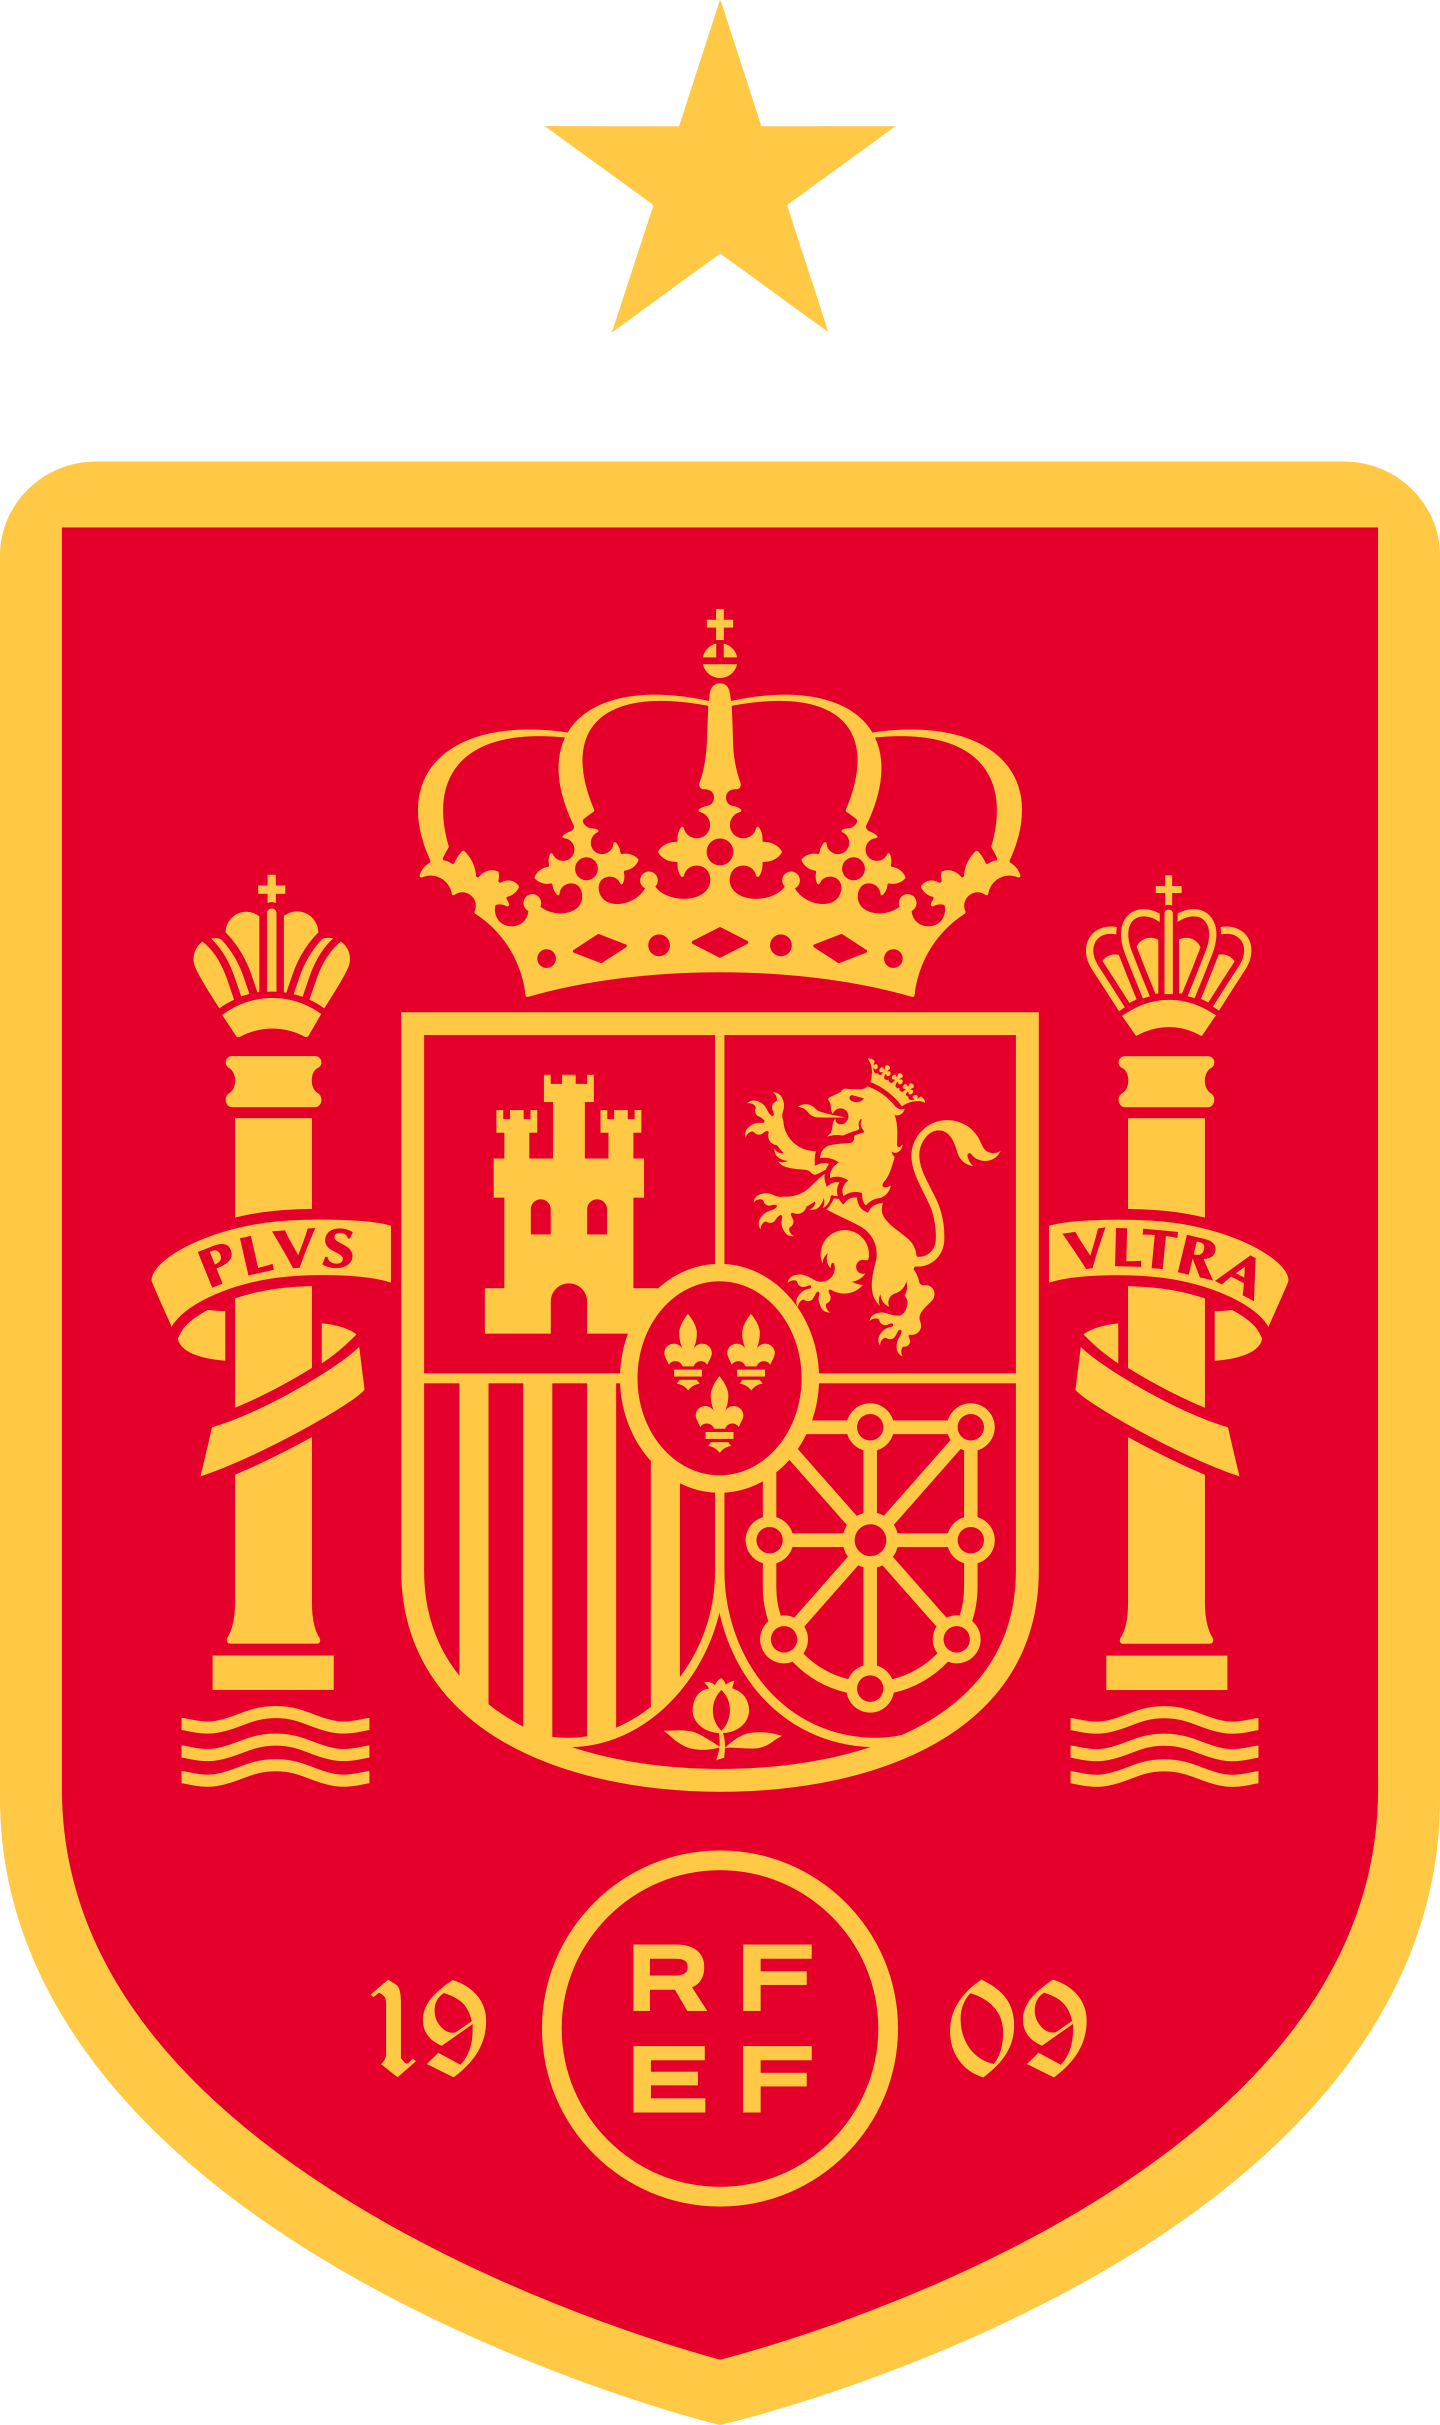 spain national football team logo 2 - Spain National Football Team Logo